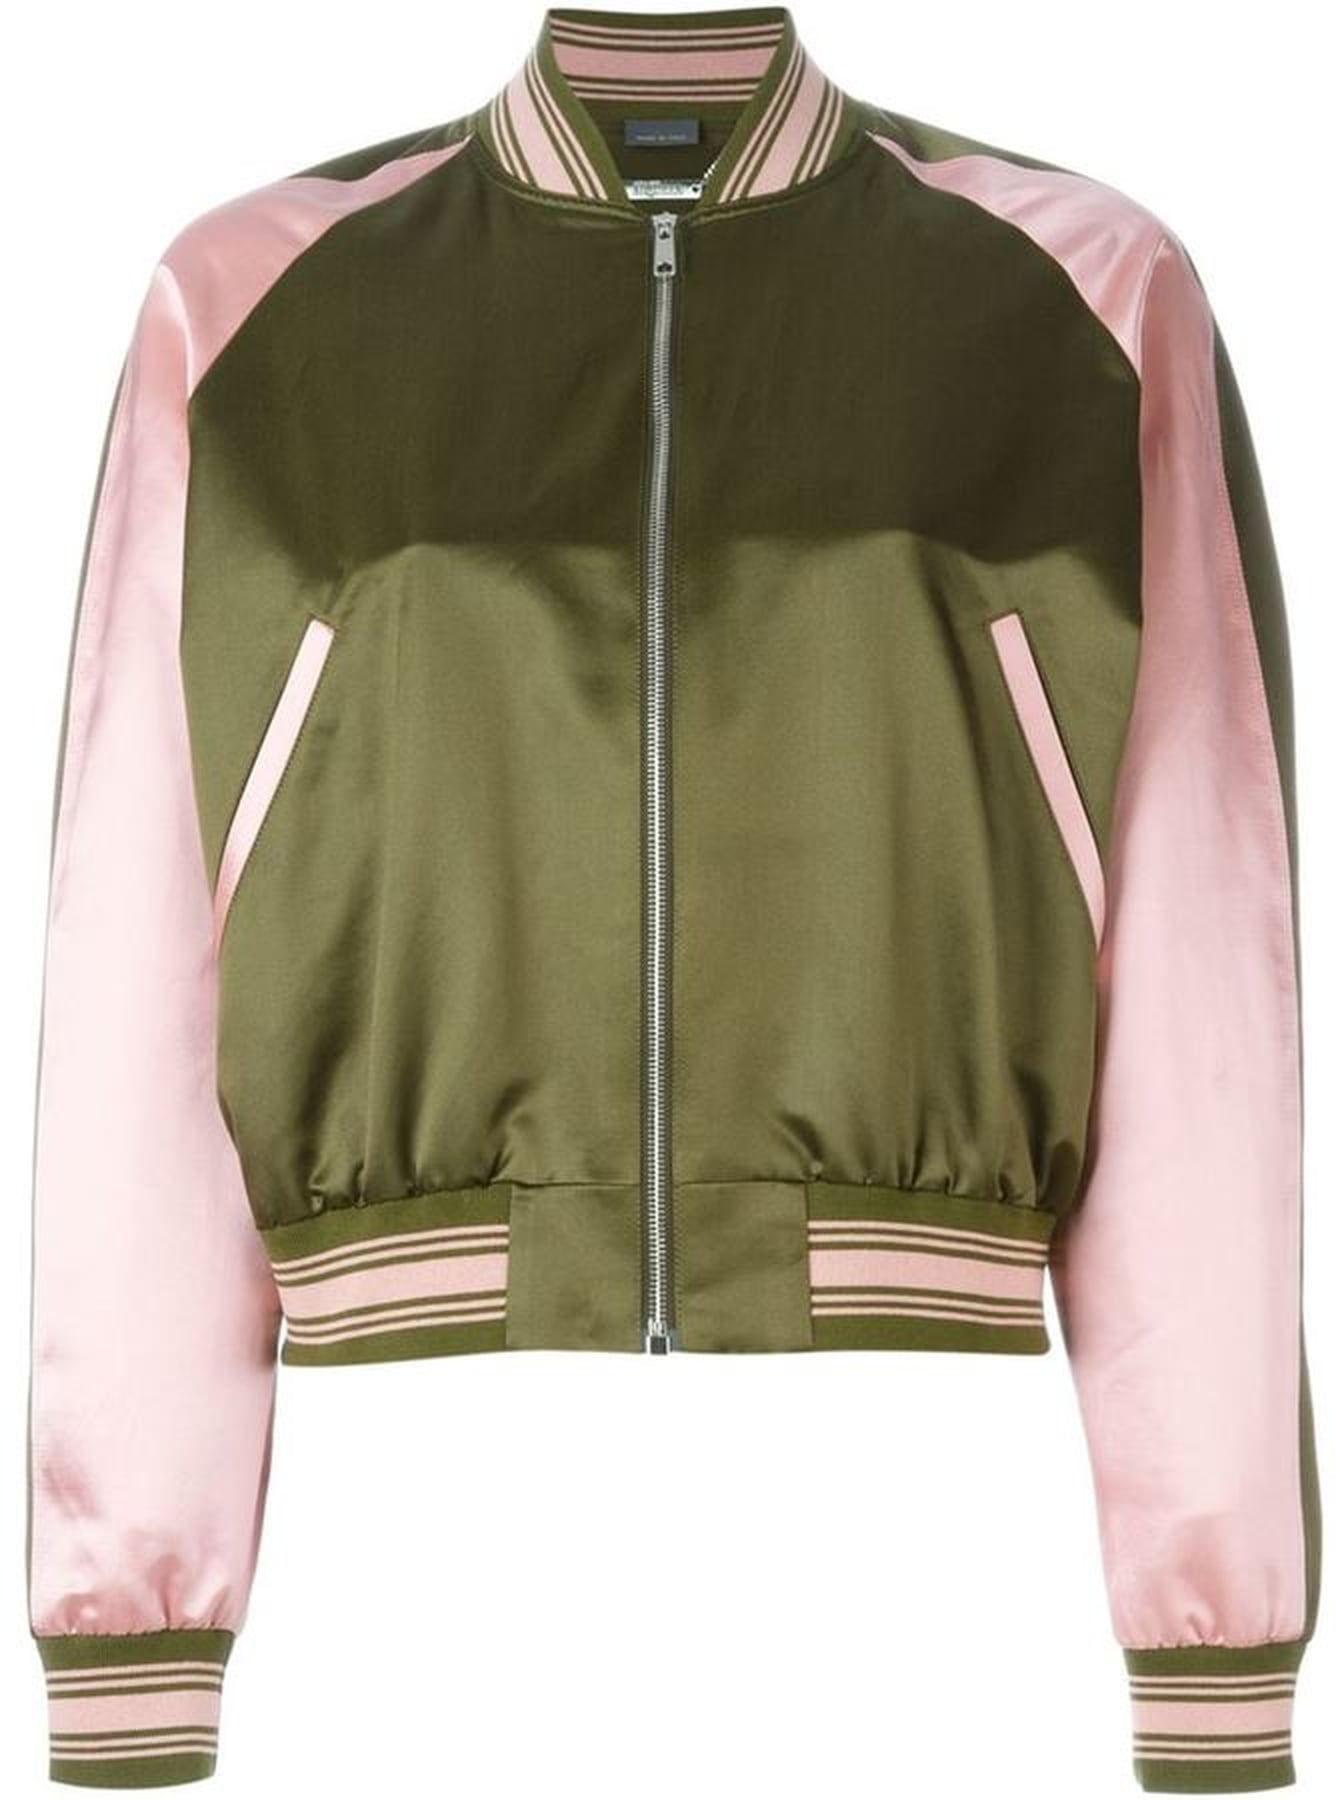 Bomber Jackets For Spring | POPSUGAR Fashion